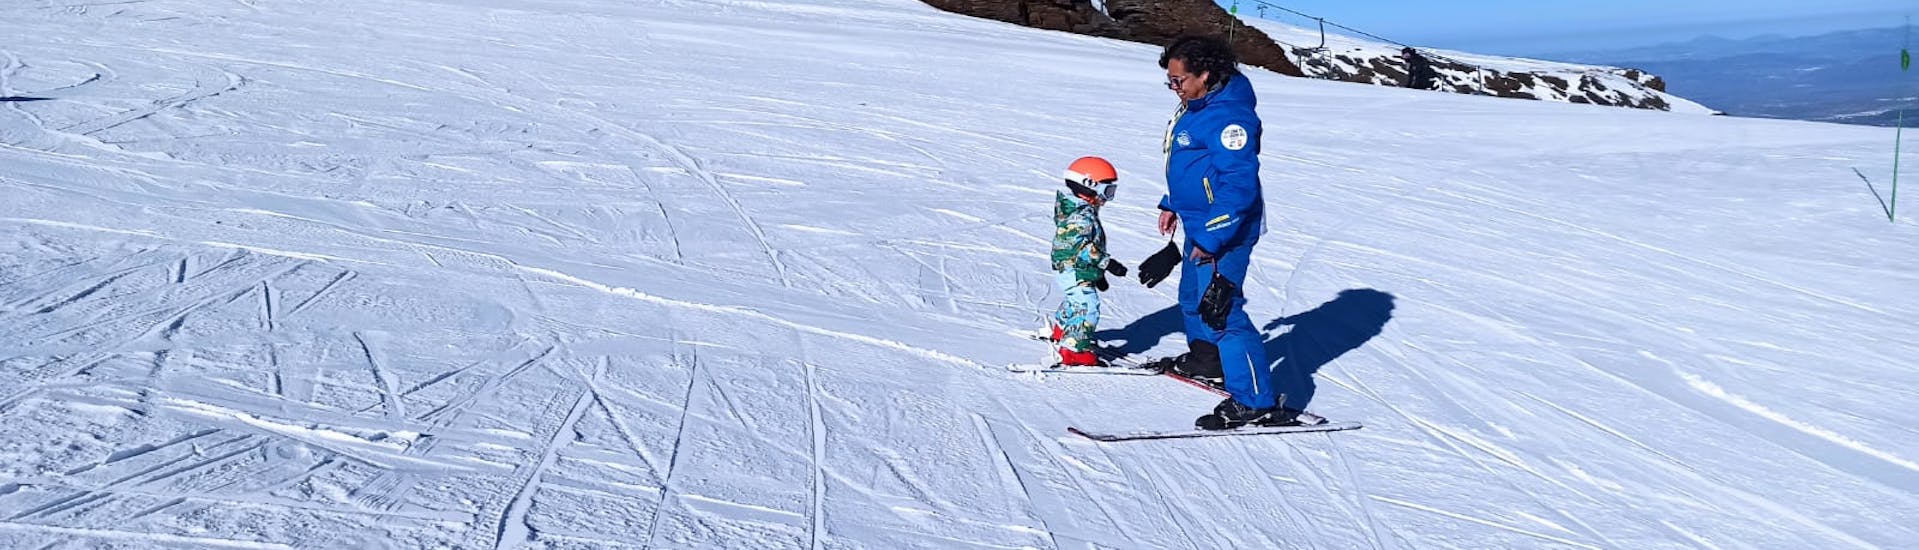 Clases particulares de esquí para niños (3-12 años) de todos los niveles.